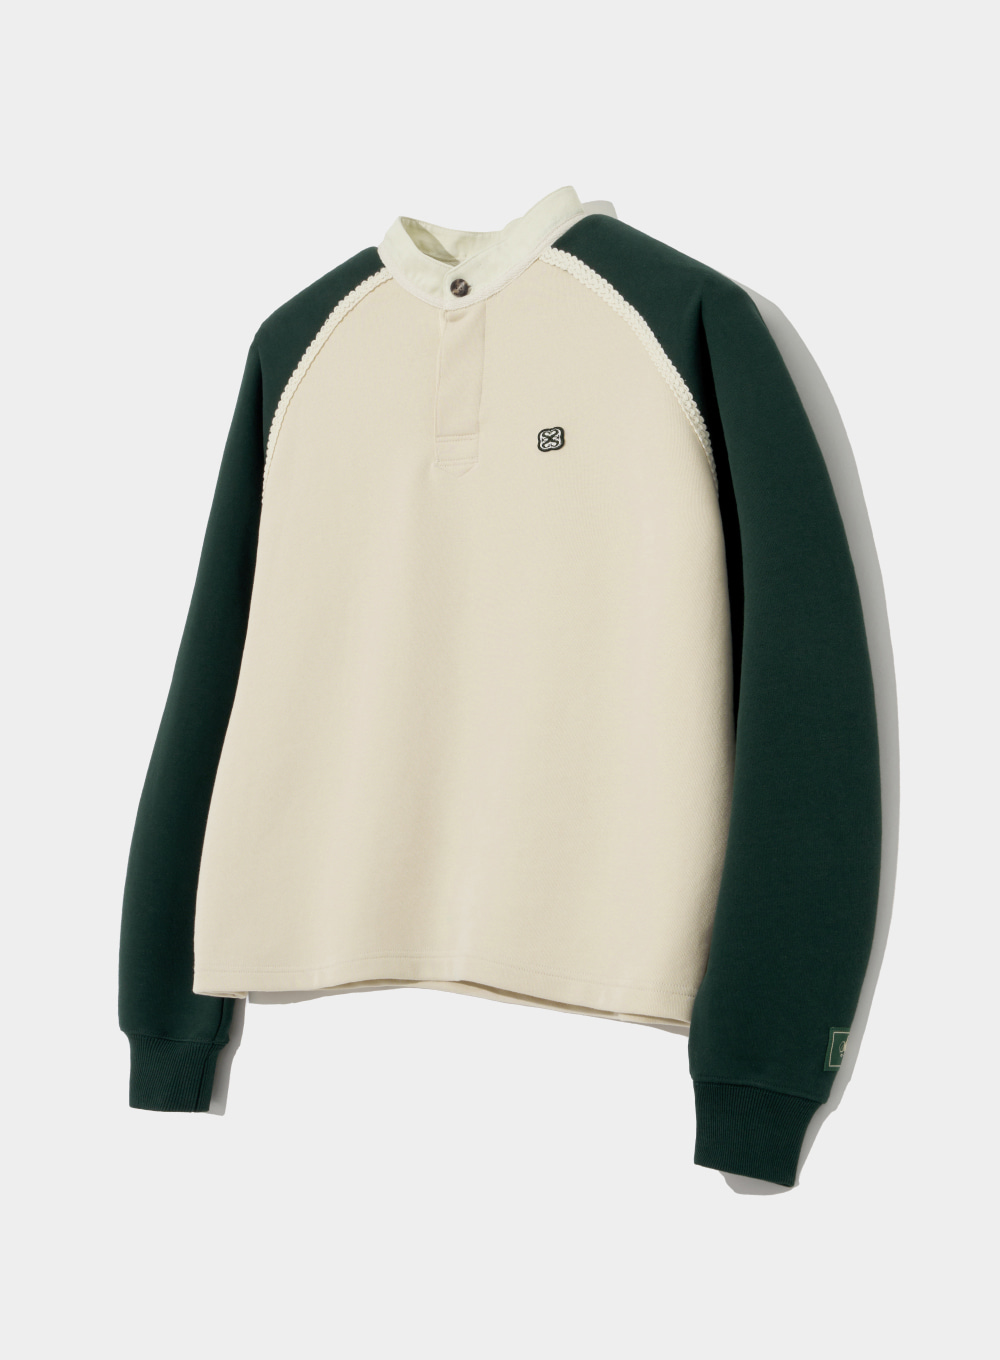 Raglan Football Sweatshirts - Green Ivory